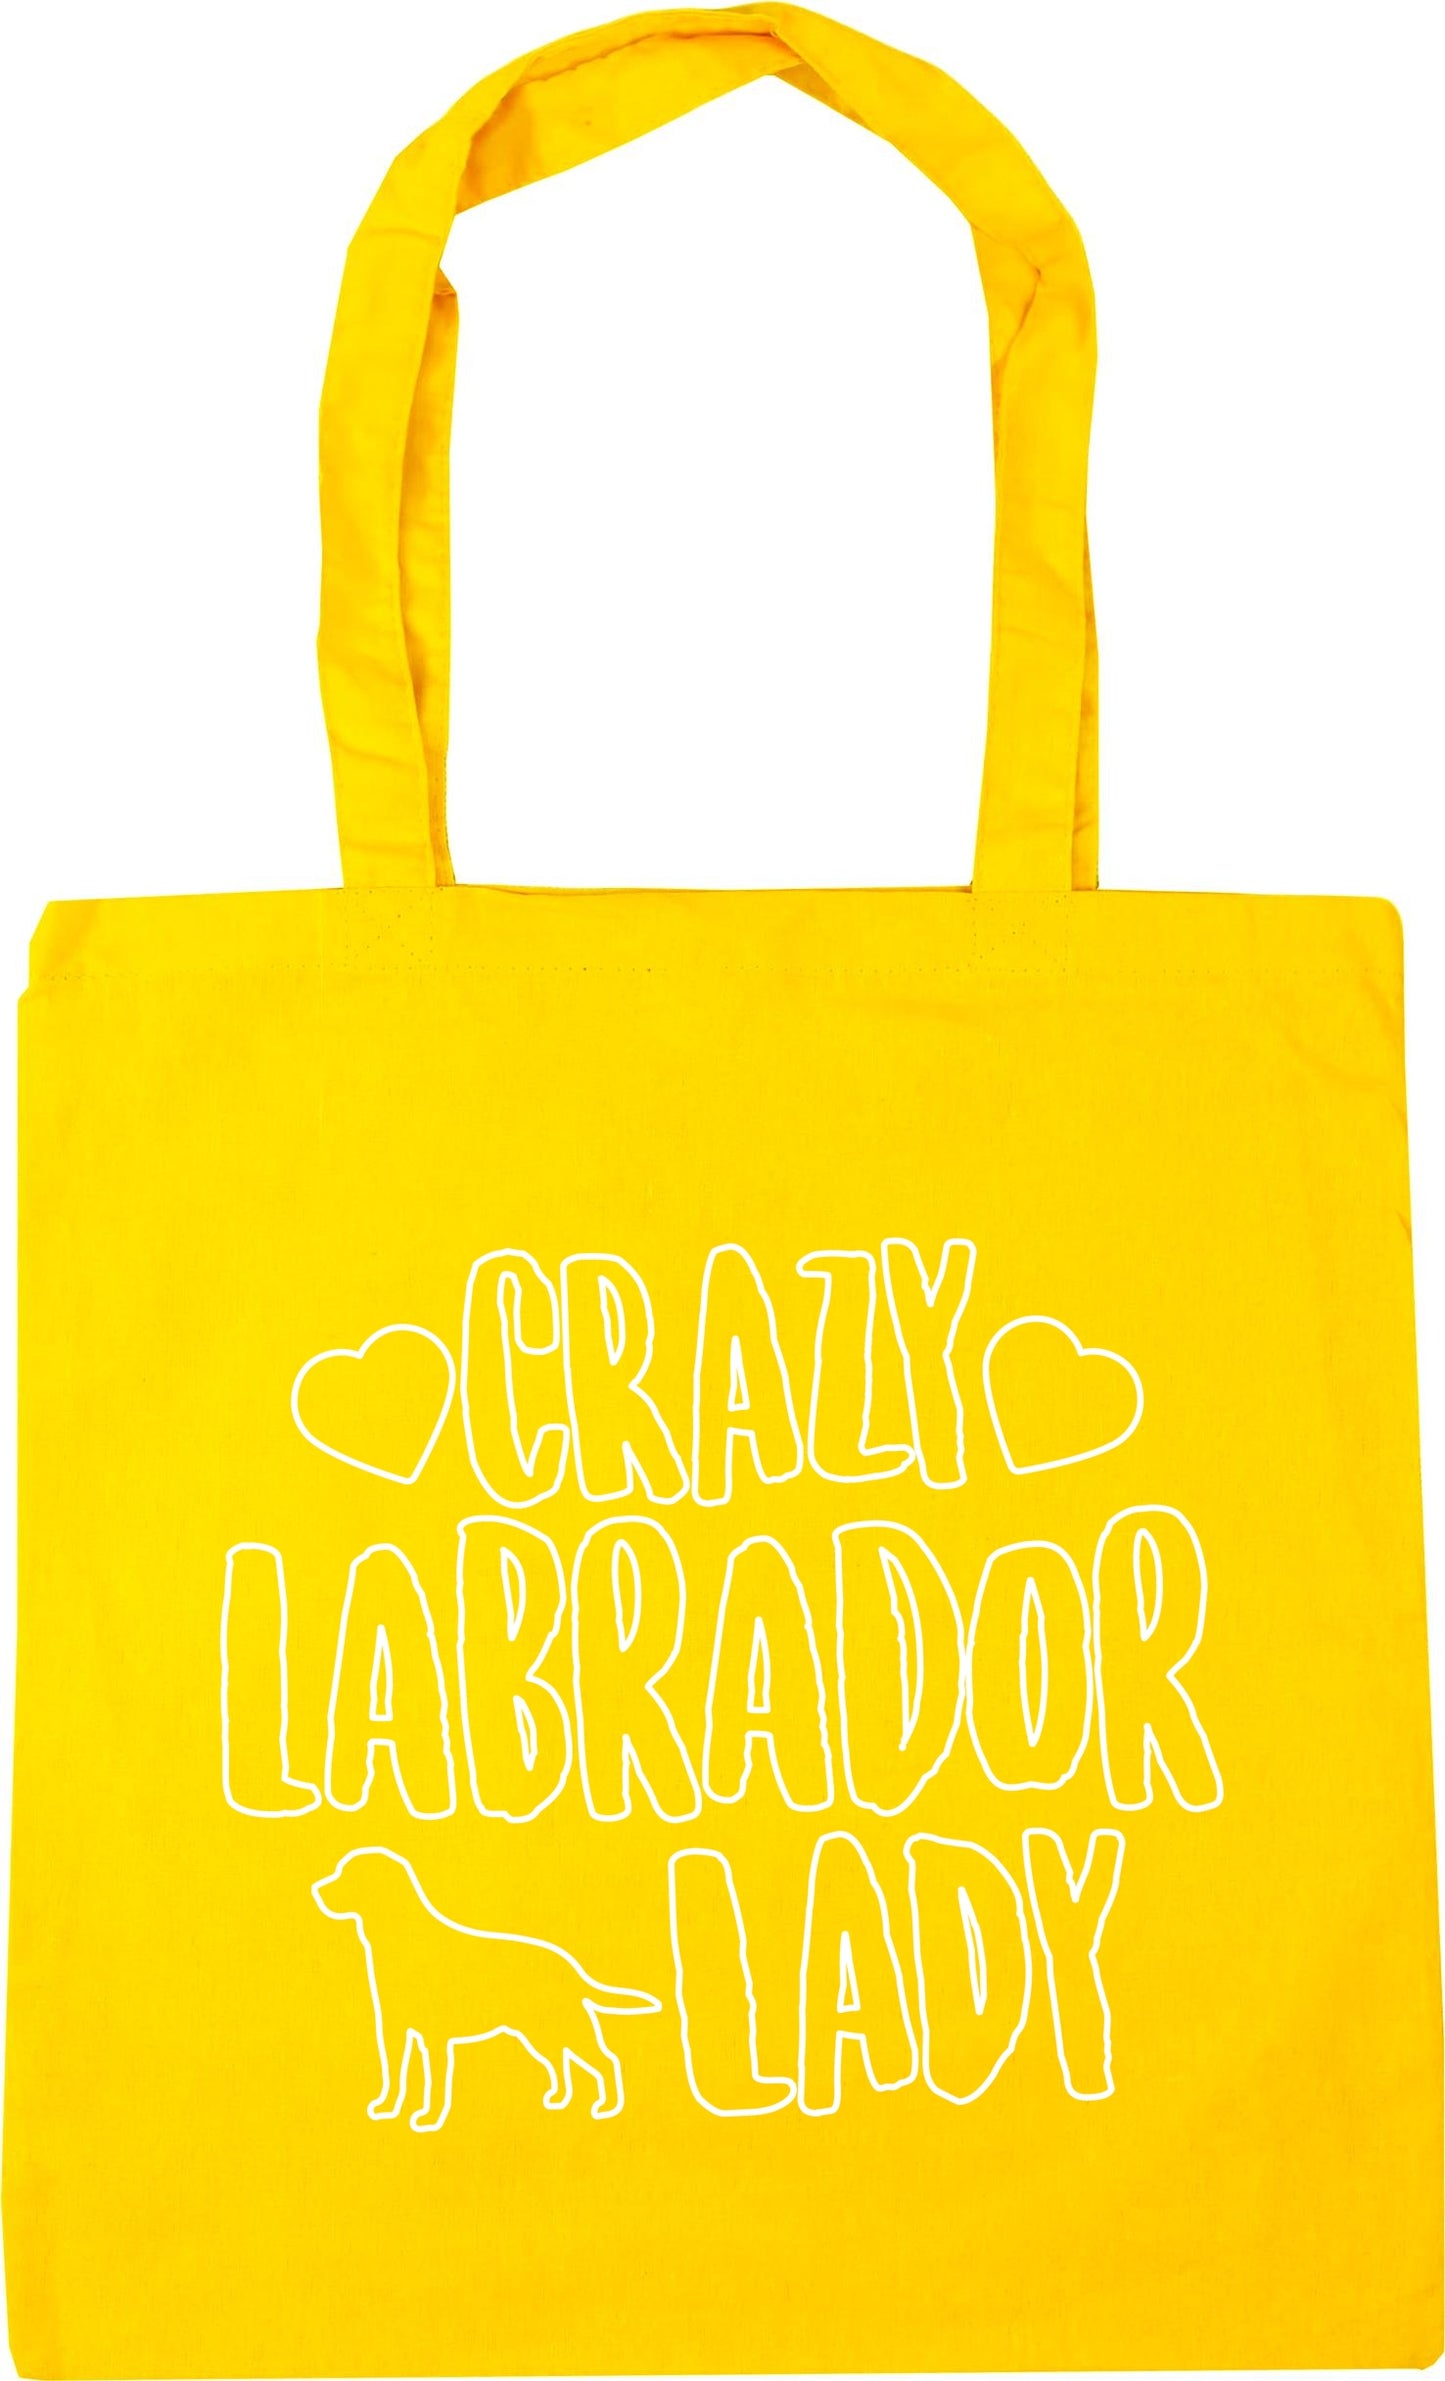 Crazy Labrador lady dog Tote Bag